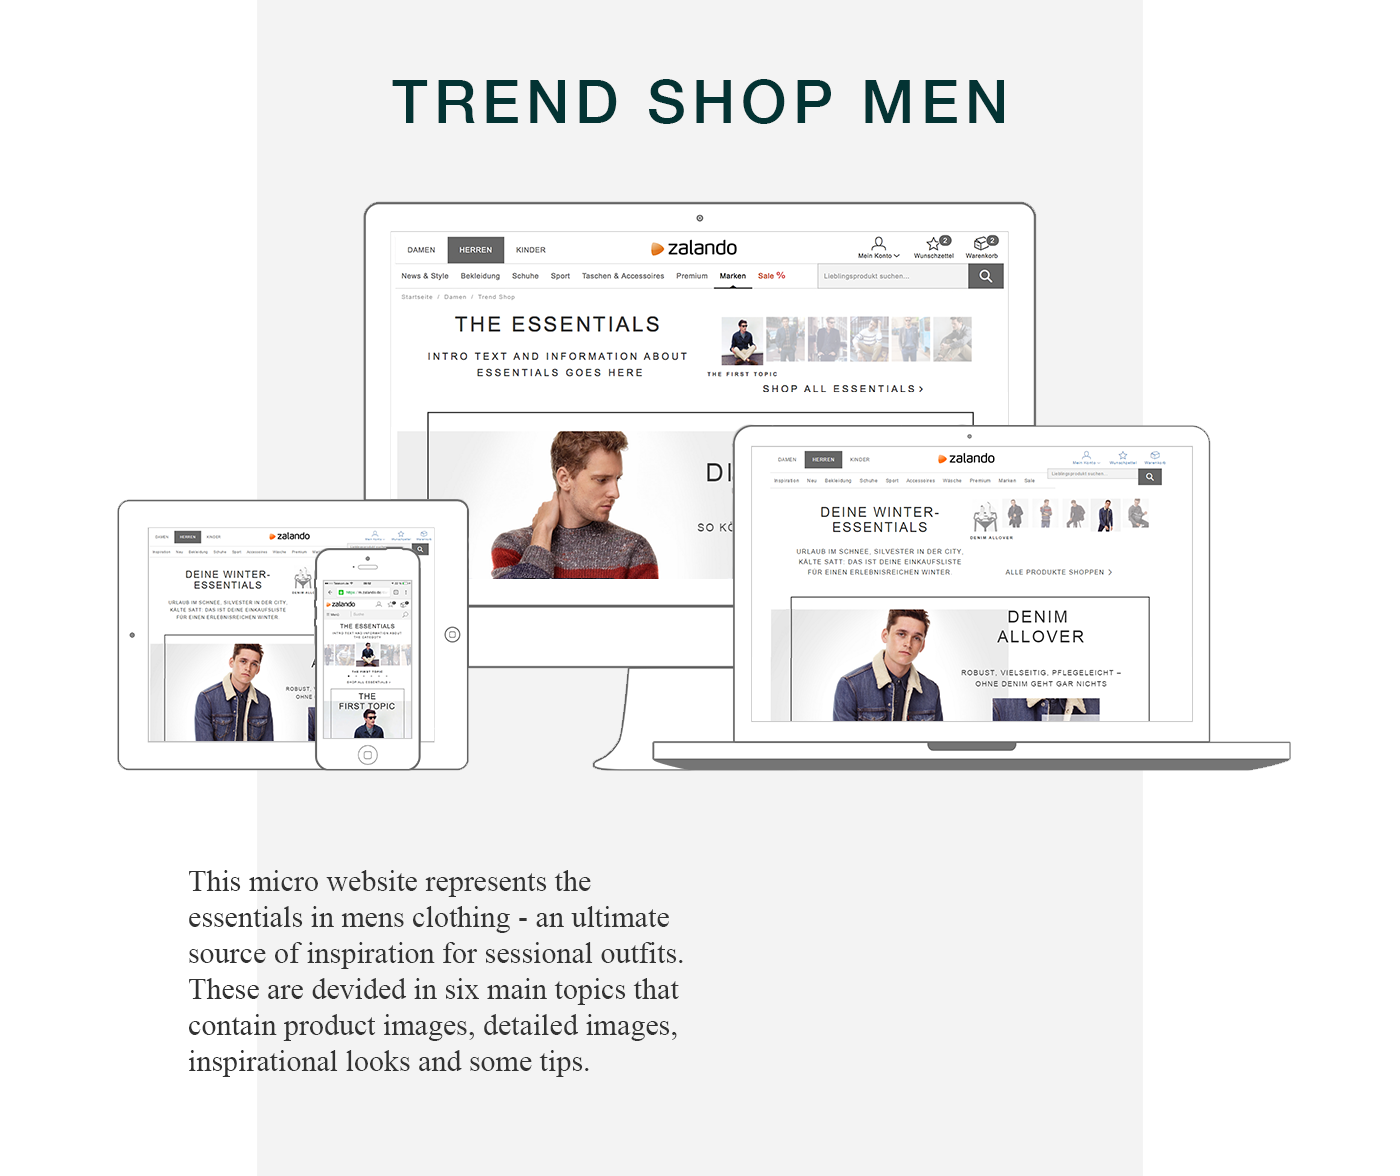 trends Trend shop men essentials Clothing Fashion shop Website Design Layout m.site mobile site